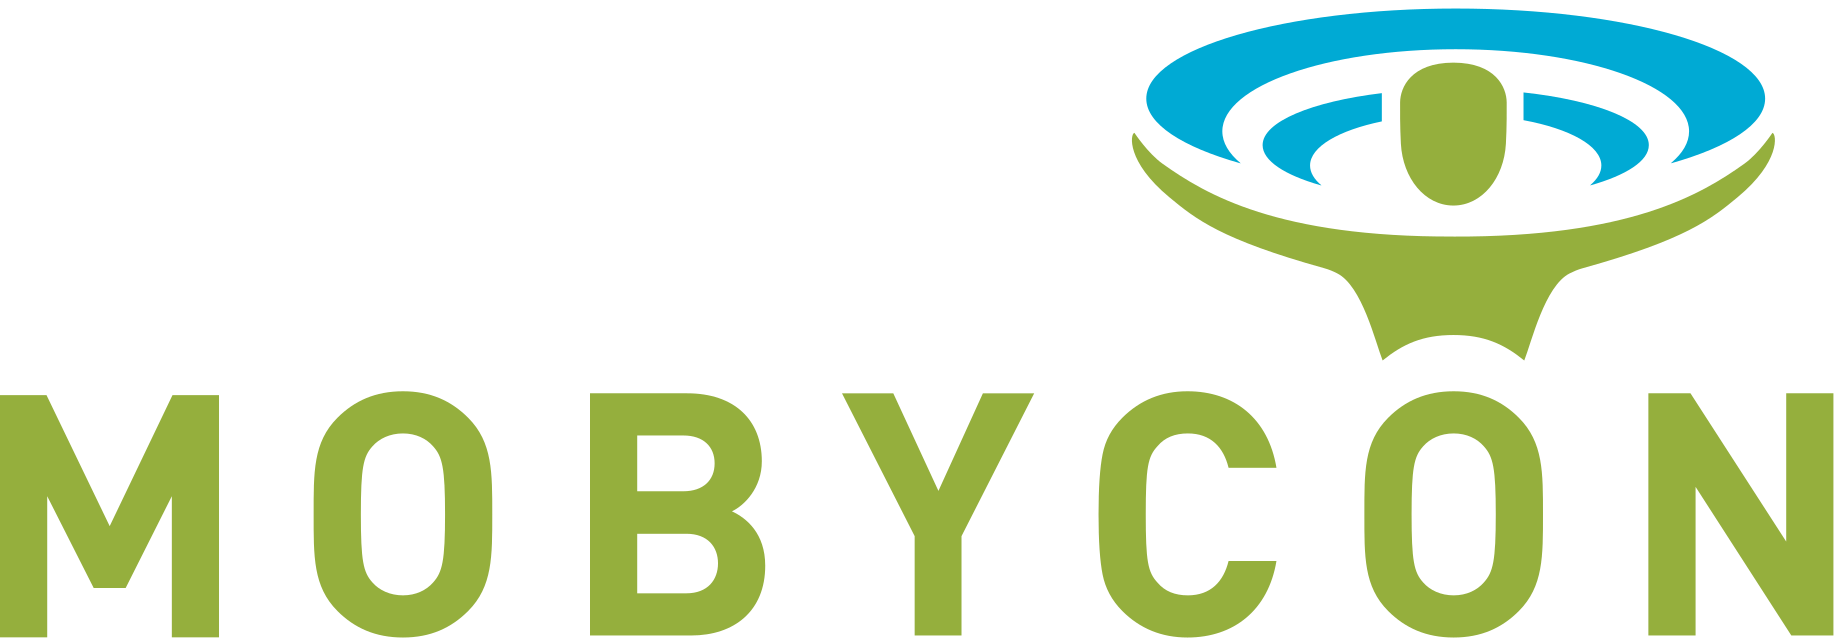 mobycon-logo